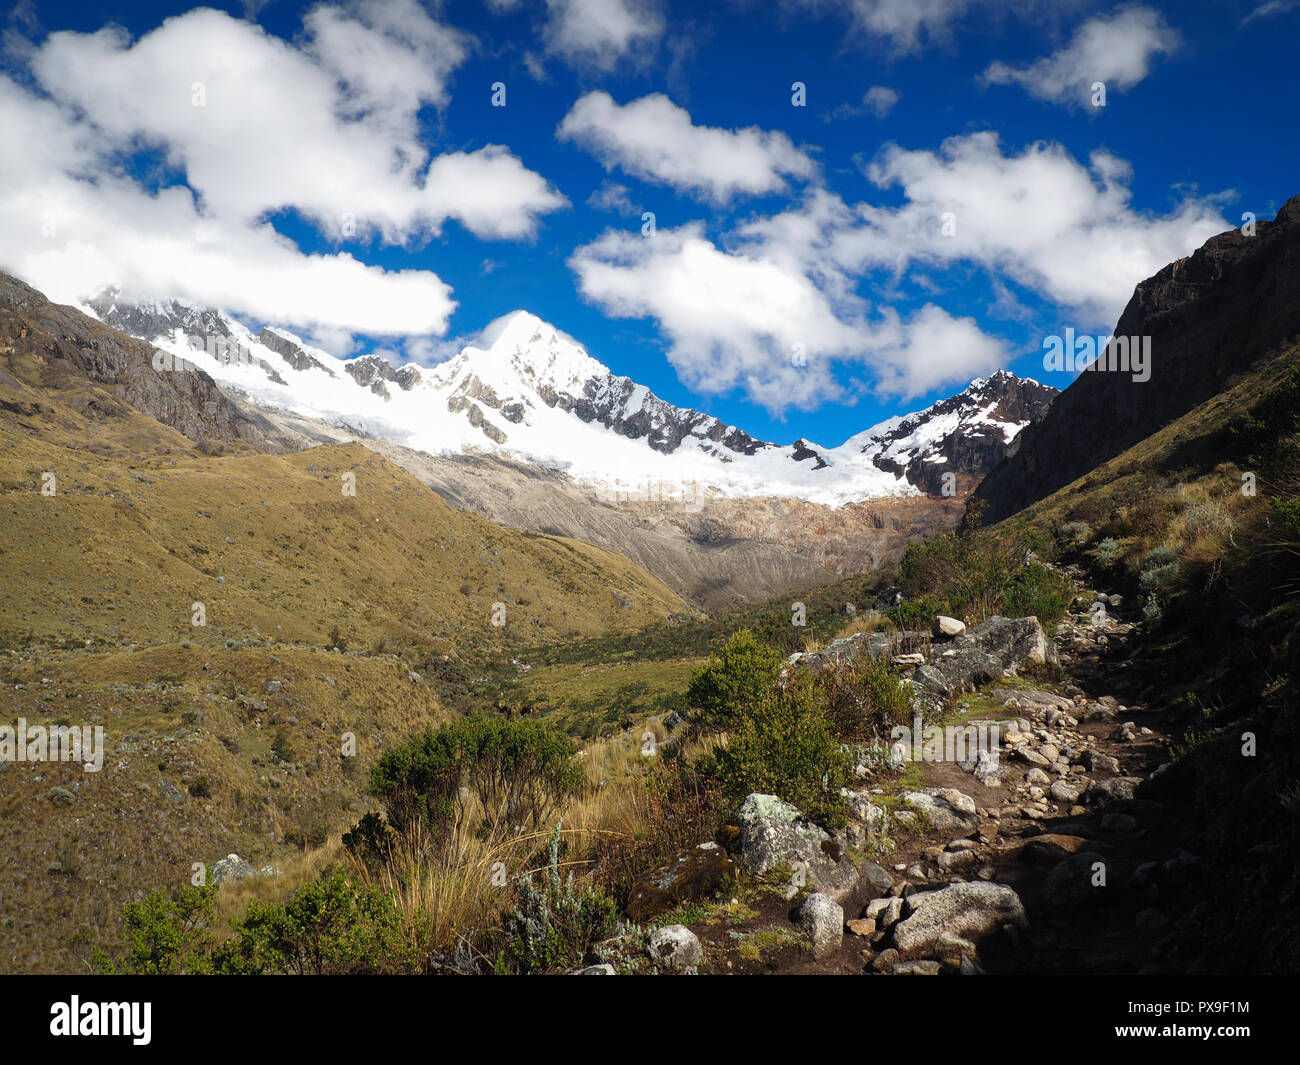 Artesonraju (most beautiful mountain in the world), Peru Stock Photo